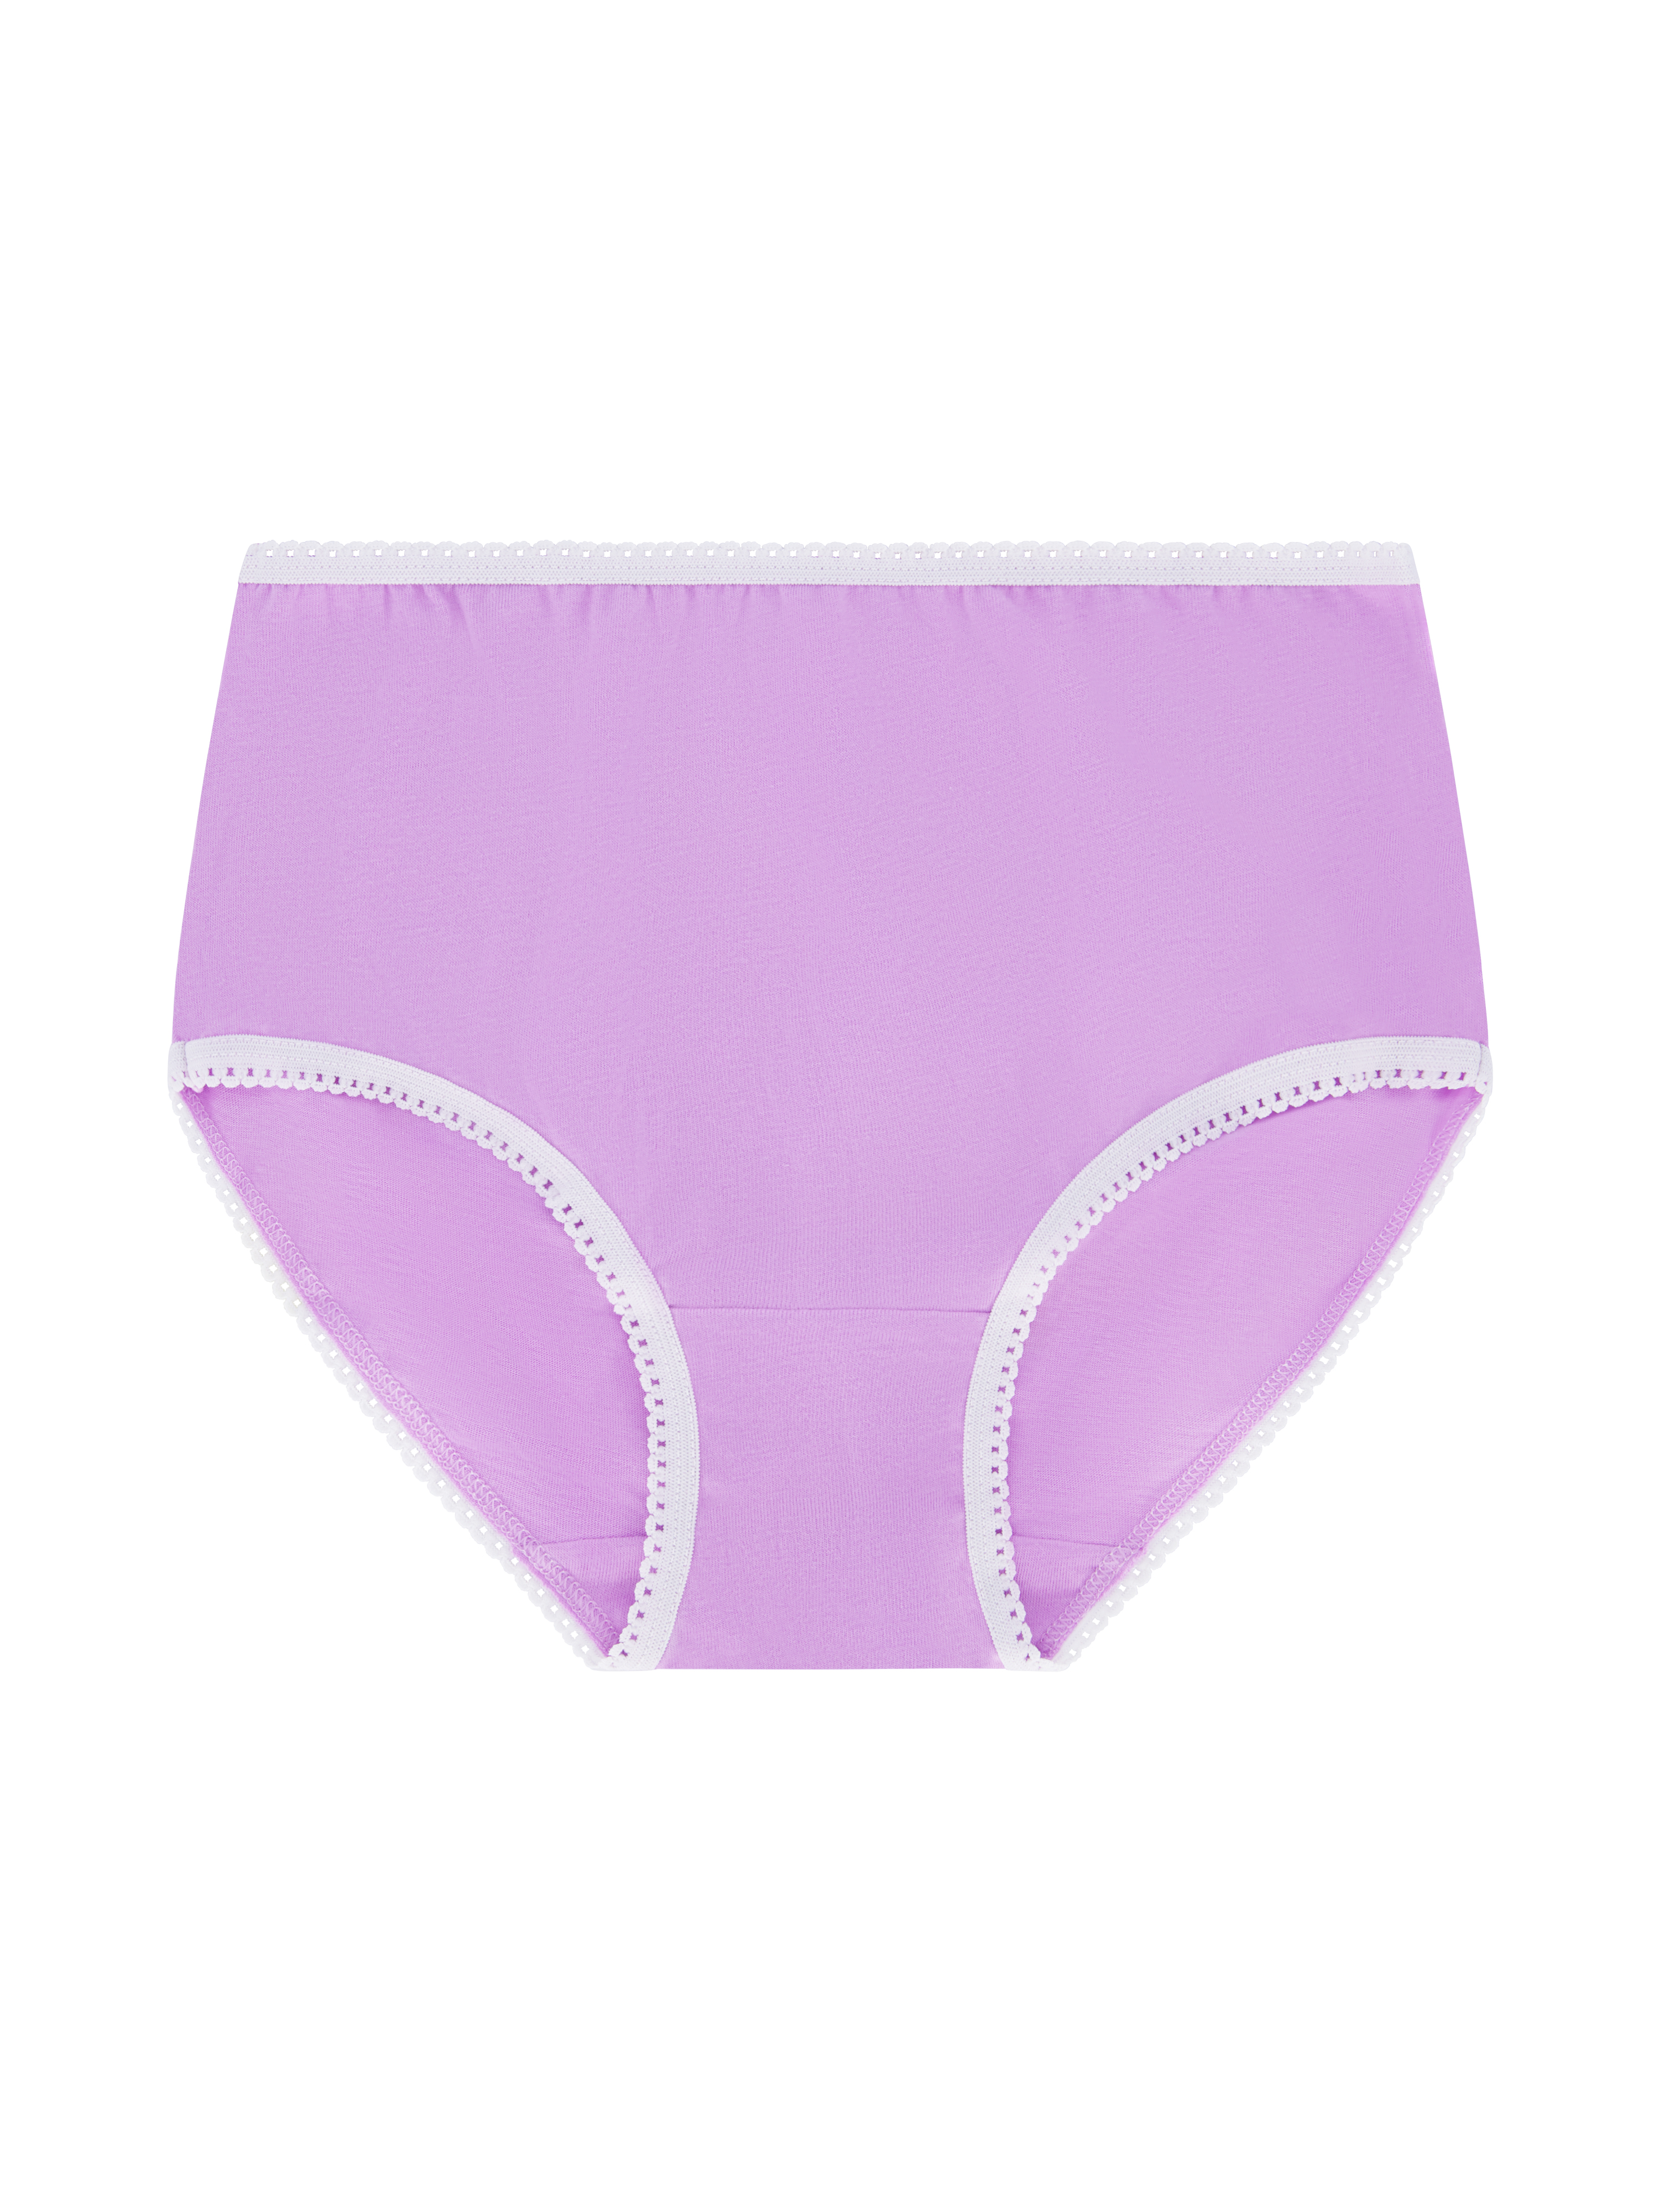 Wonder Nation Girls Brief Underwear 14-Pack, Sizes 4-18 - image 16 of 17